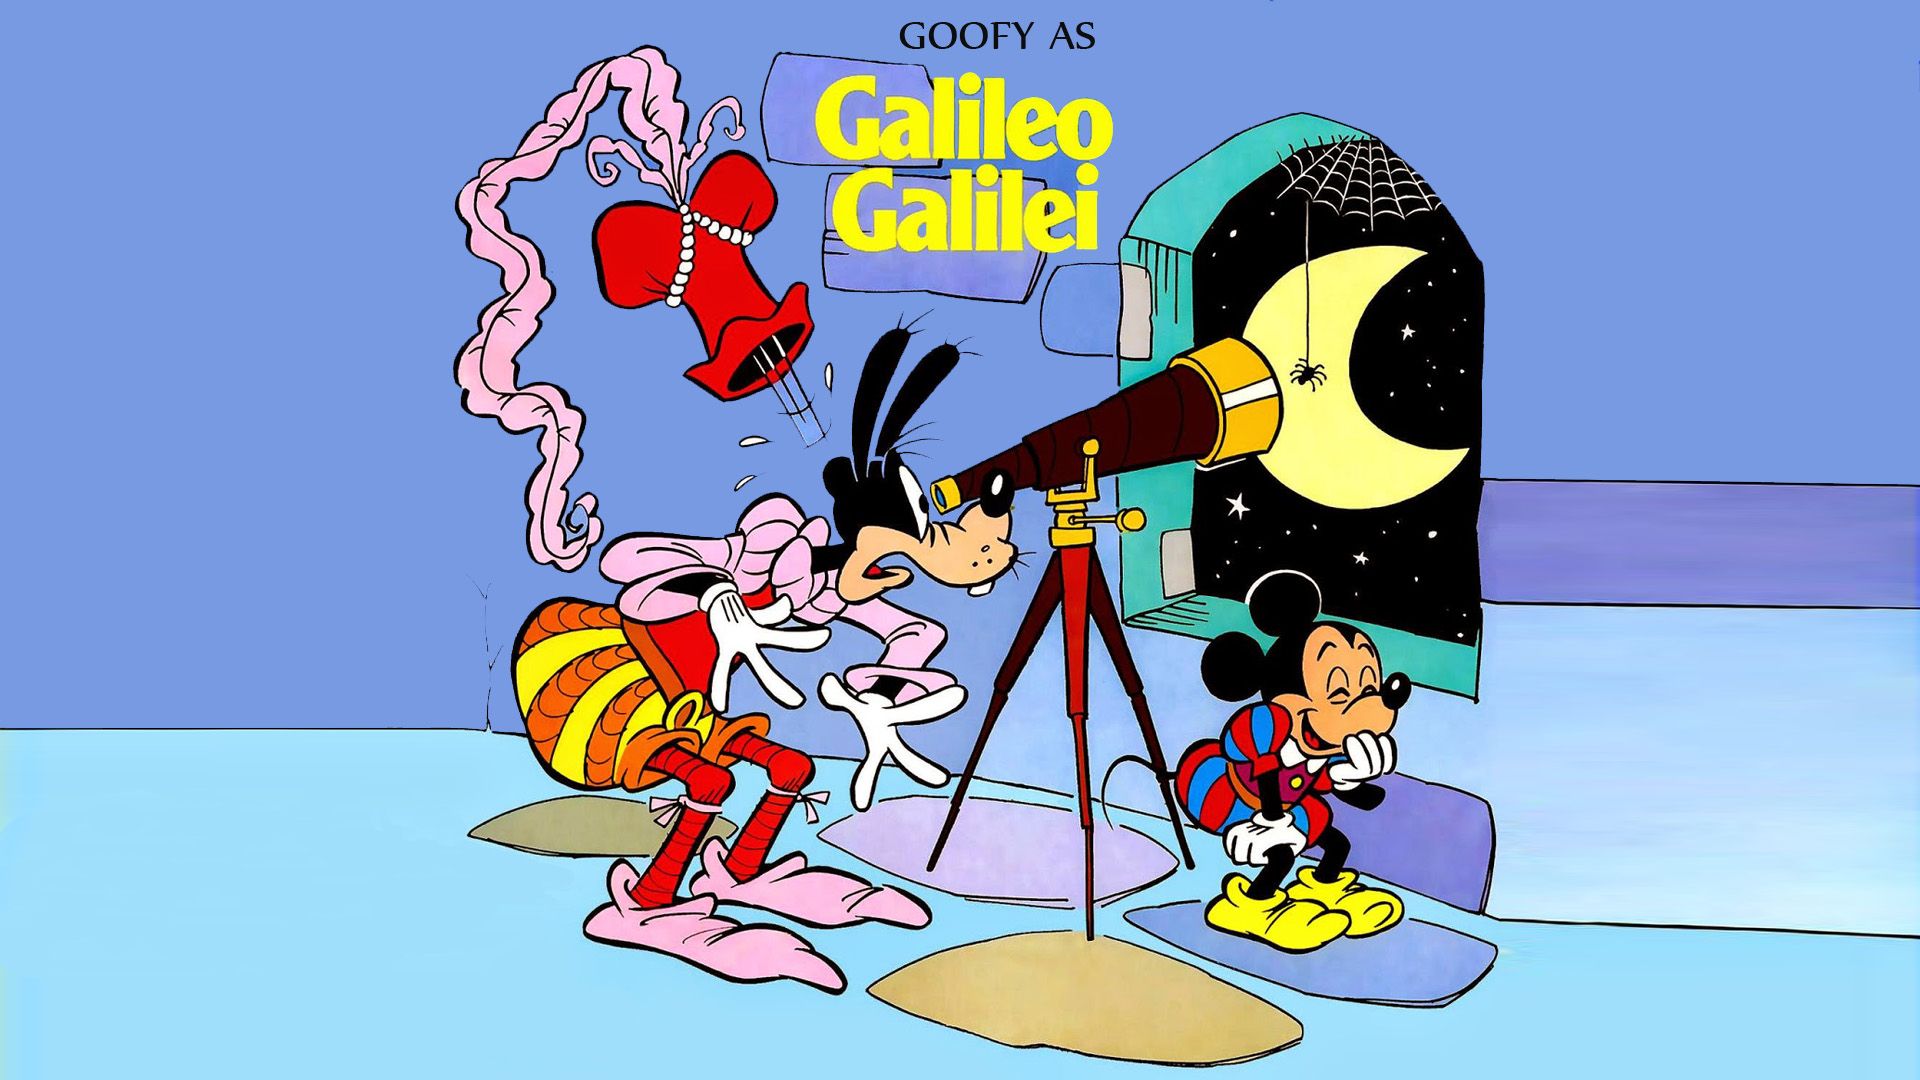 The Big Goofy Album Goofy As Galileo Galilei Cartoon Walt Disney